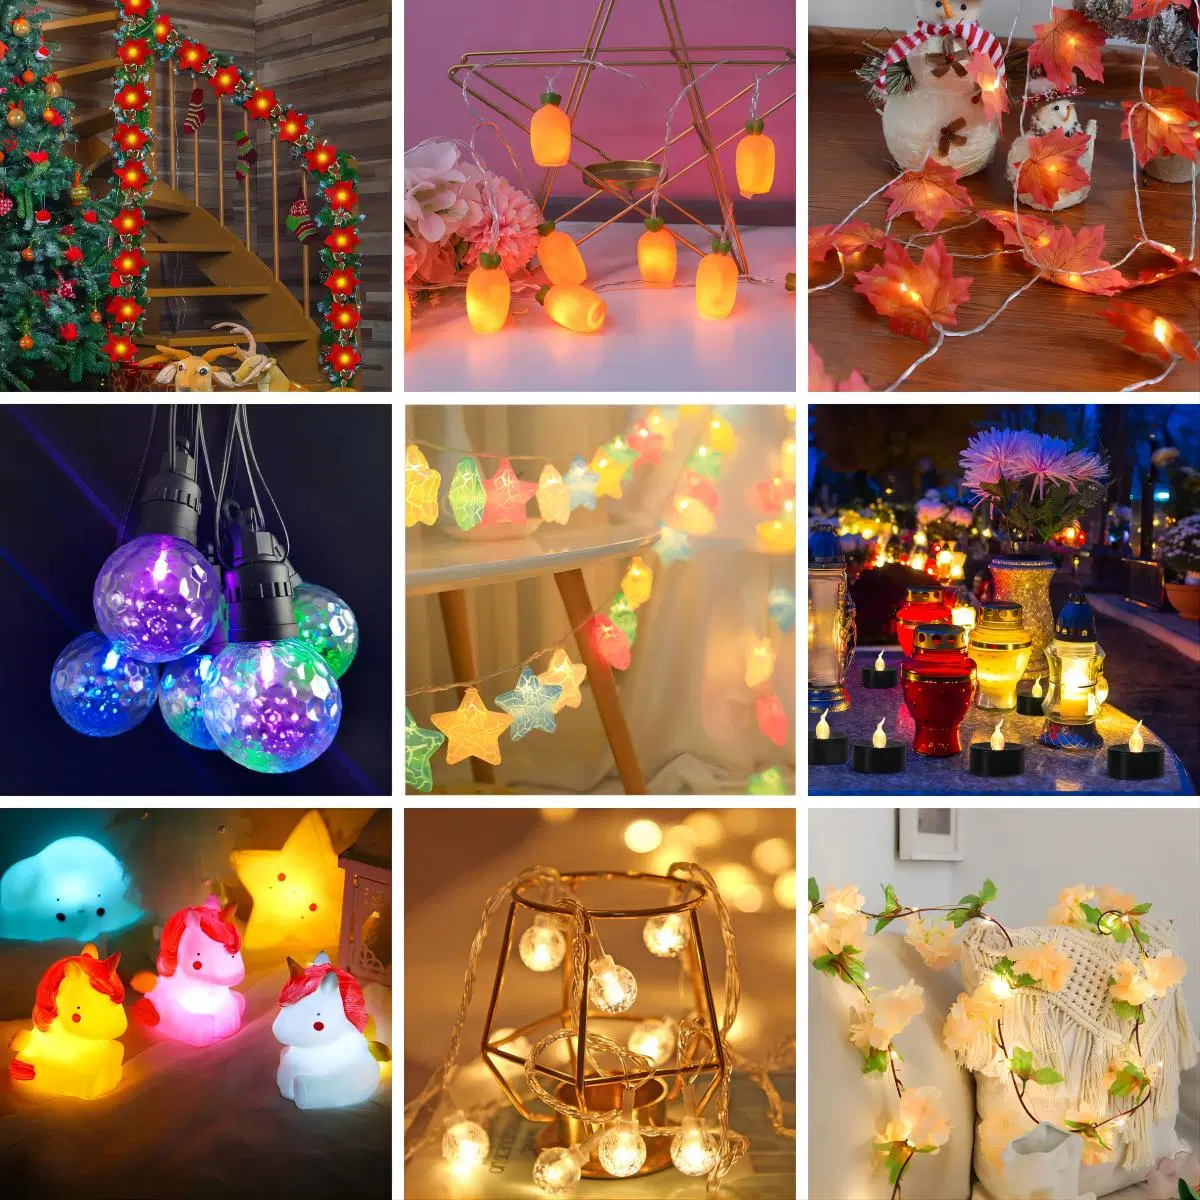 На заводе для изготовителей оборудования индивидуального Xmas декоративного освещения Navidad декор оптовые цены привели газа легких домашних декор лампа освещения Рождества производителя в Китае